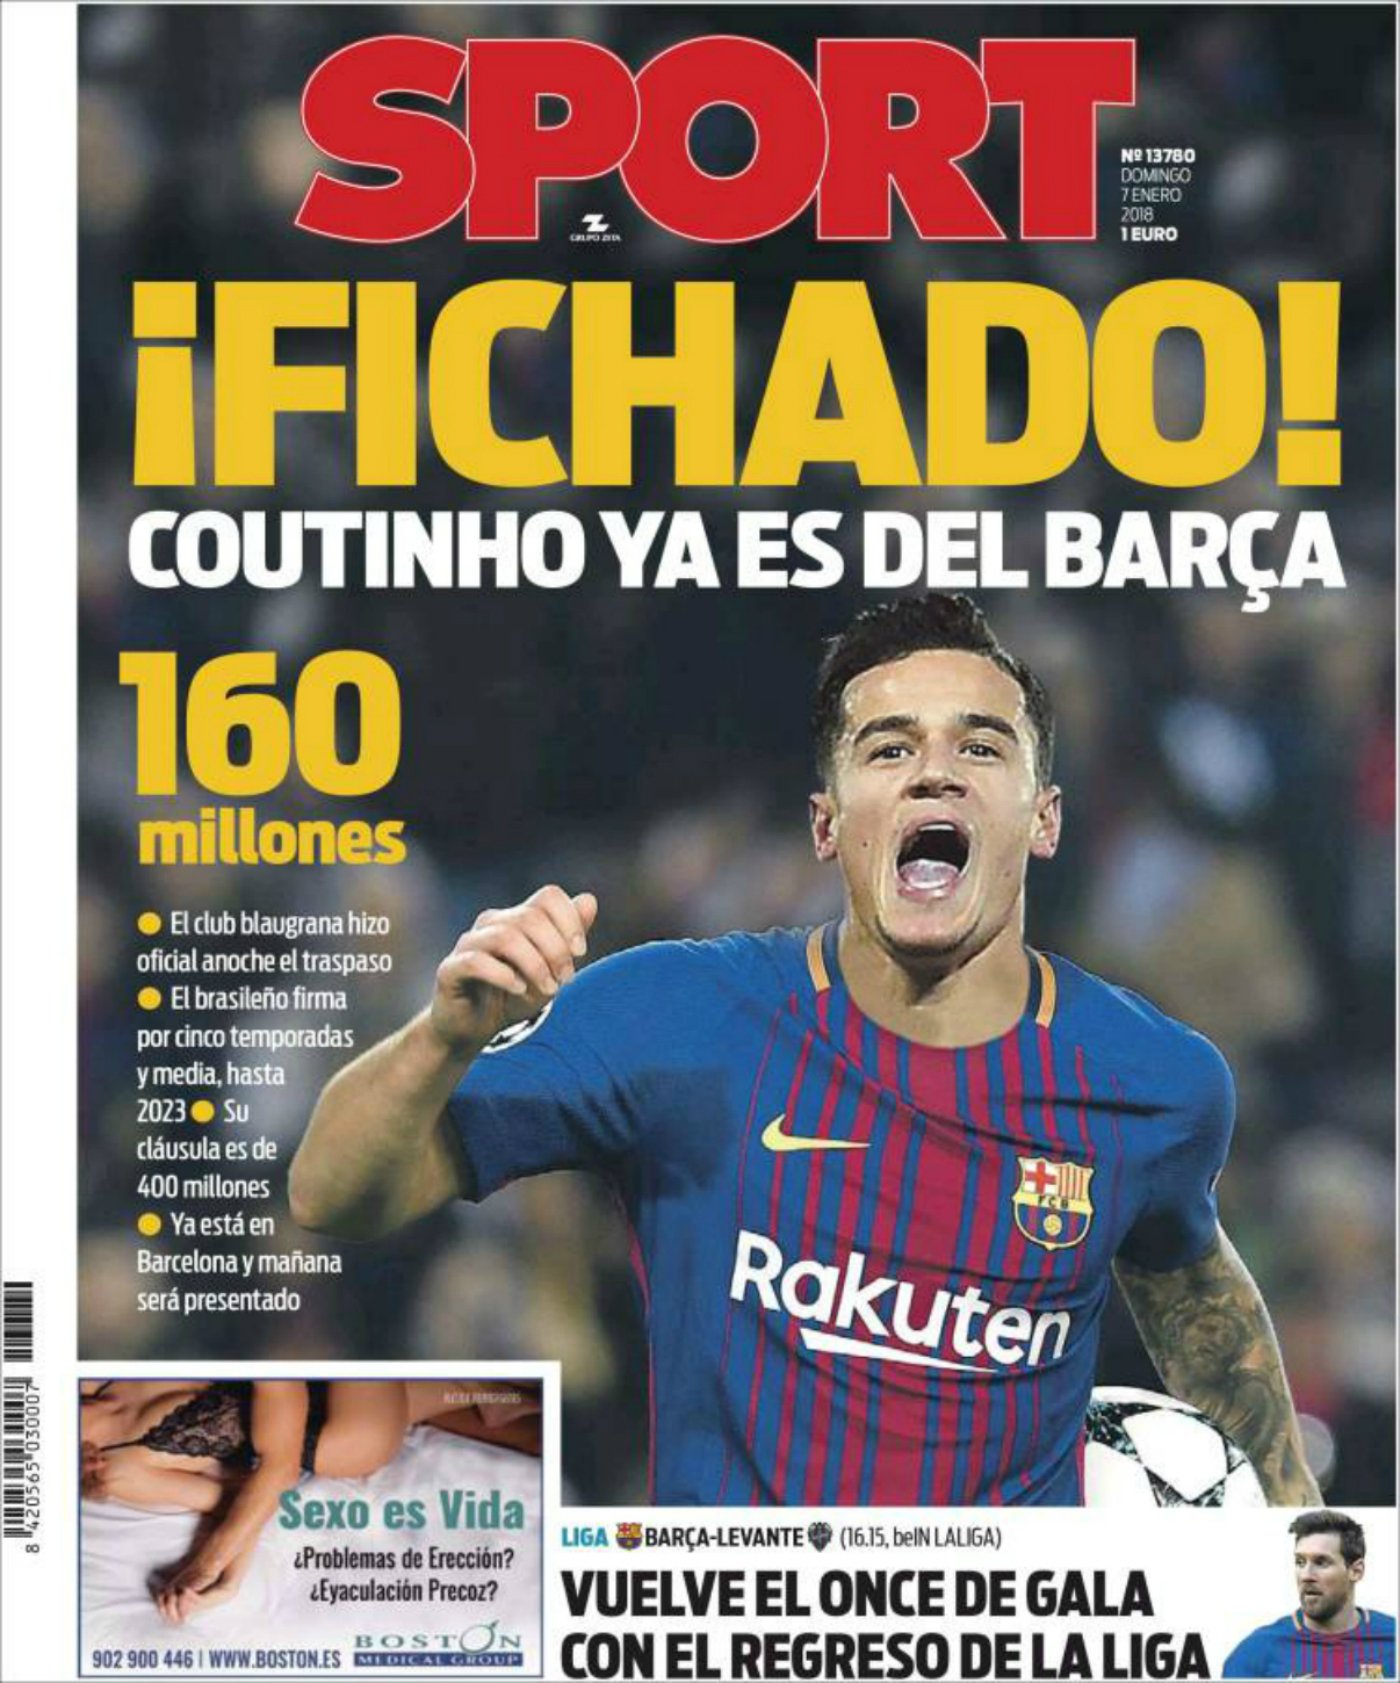 La premsa reacciona a l'arribada de Coutinho: "Un fitxatge de rècord"